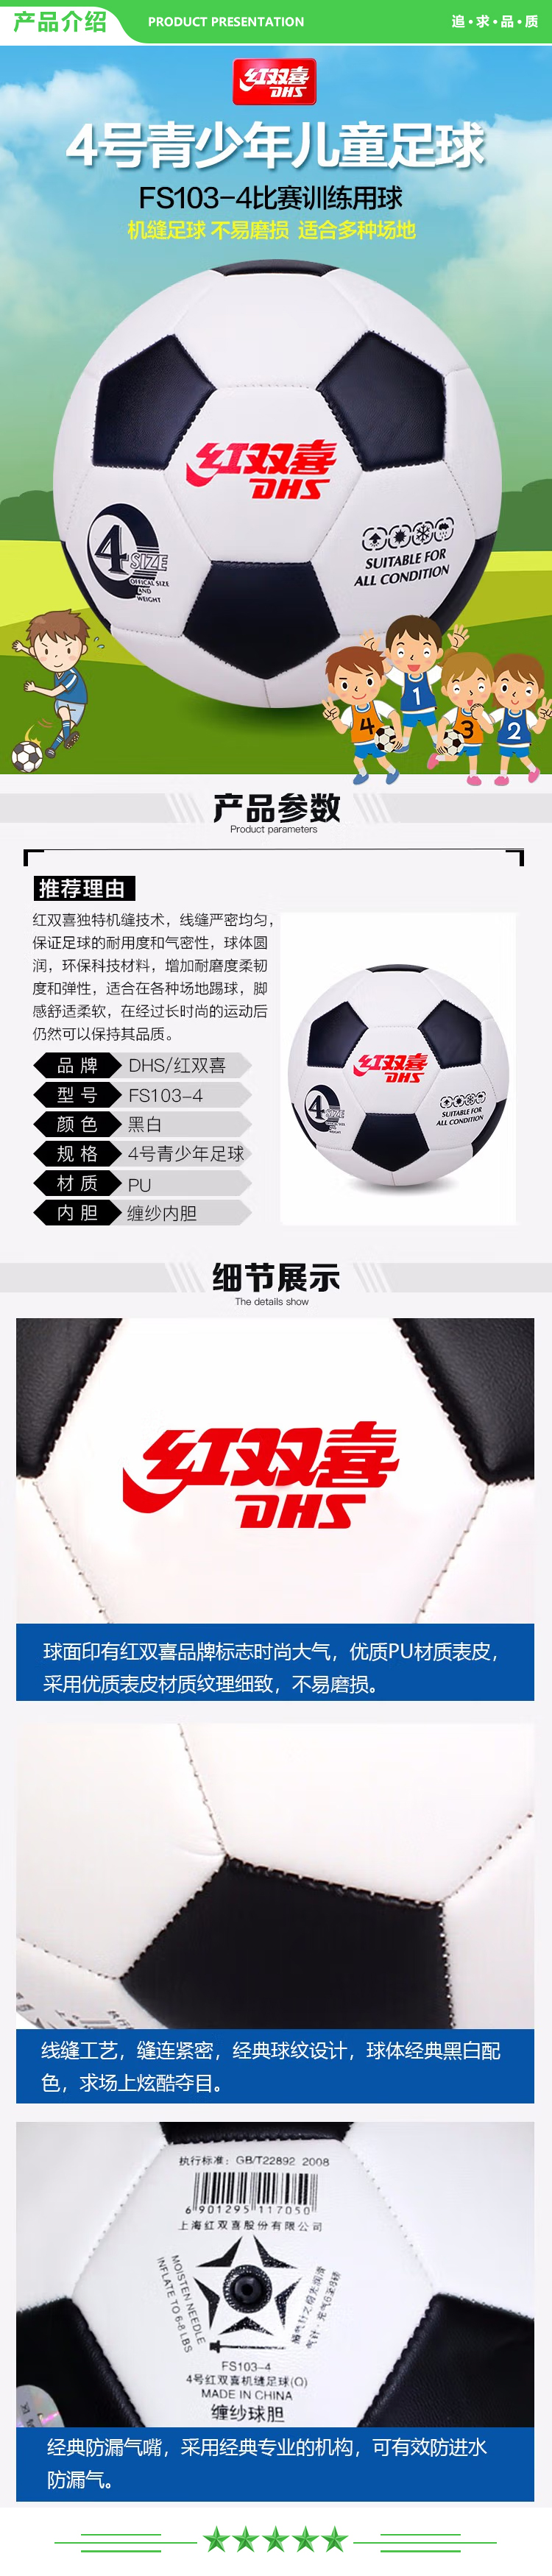 红双喜 DHS FS103-4 四号足球 经典黑白五边形4号足球 合成革足球  (2).jpg